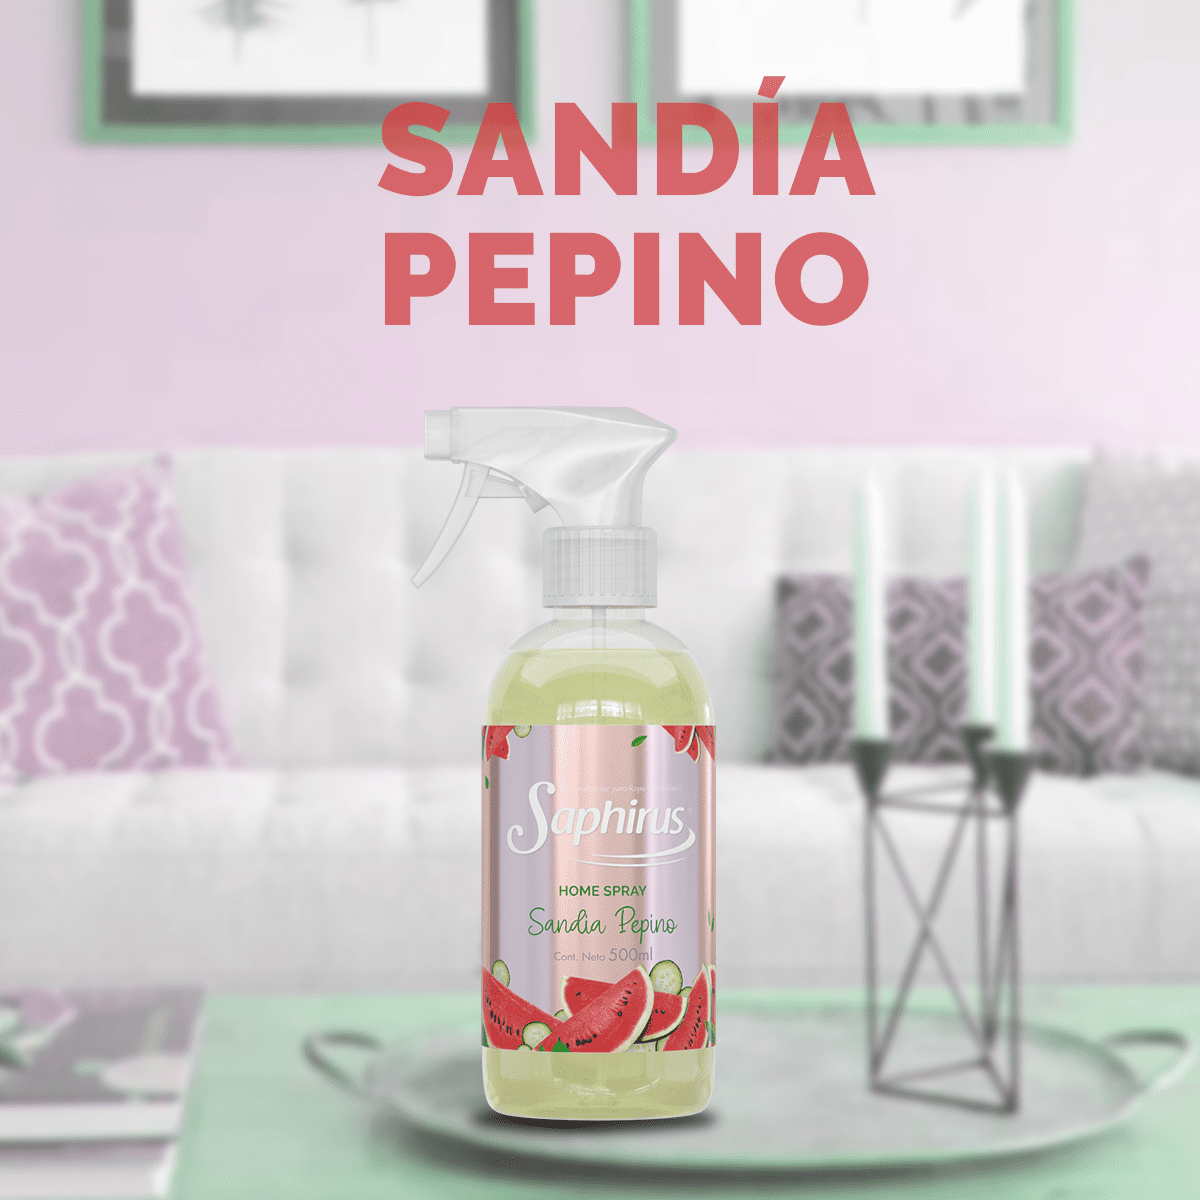 Saphirus Home Spray Sandía Pepino